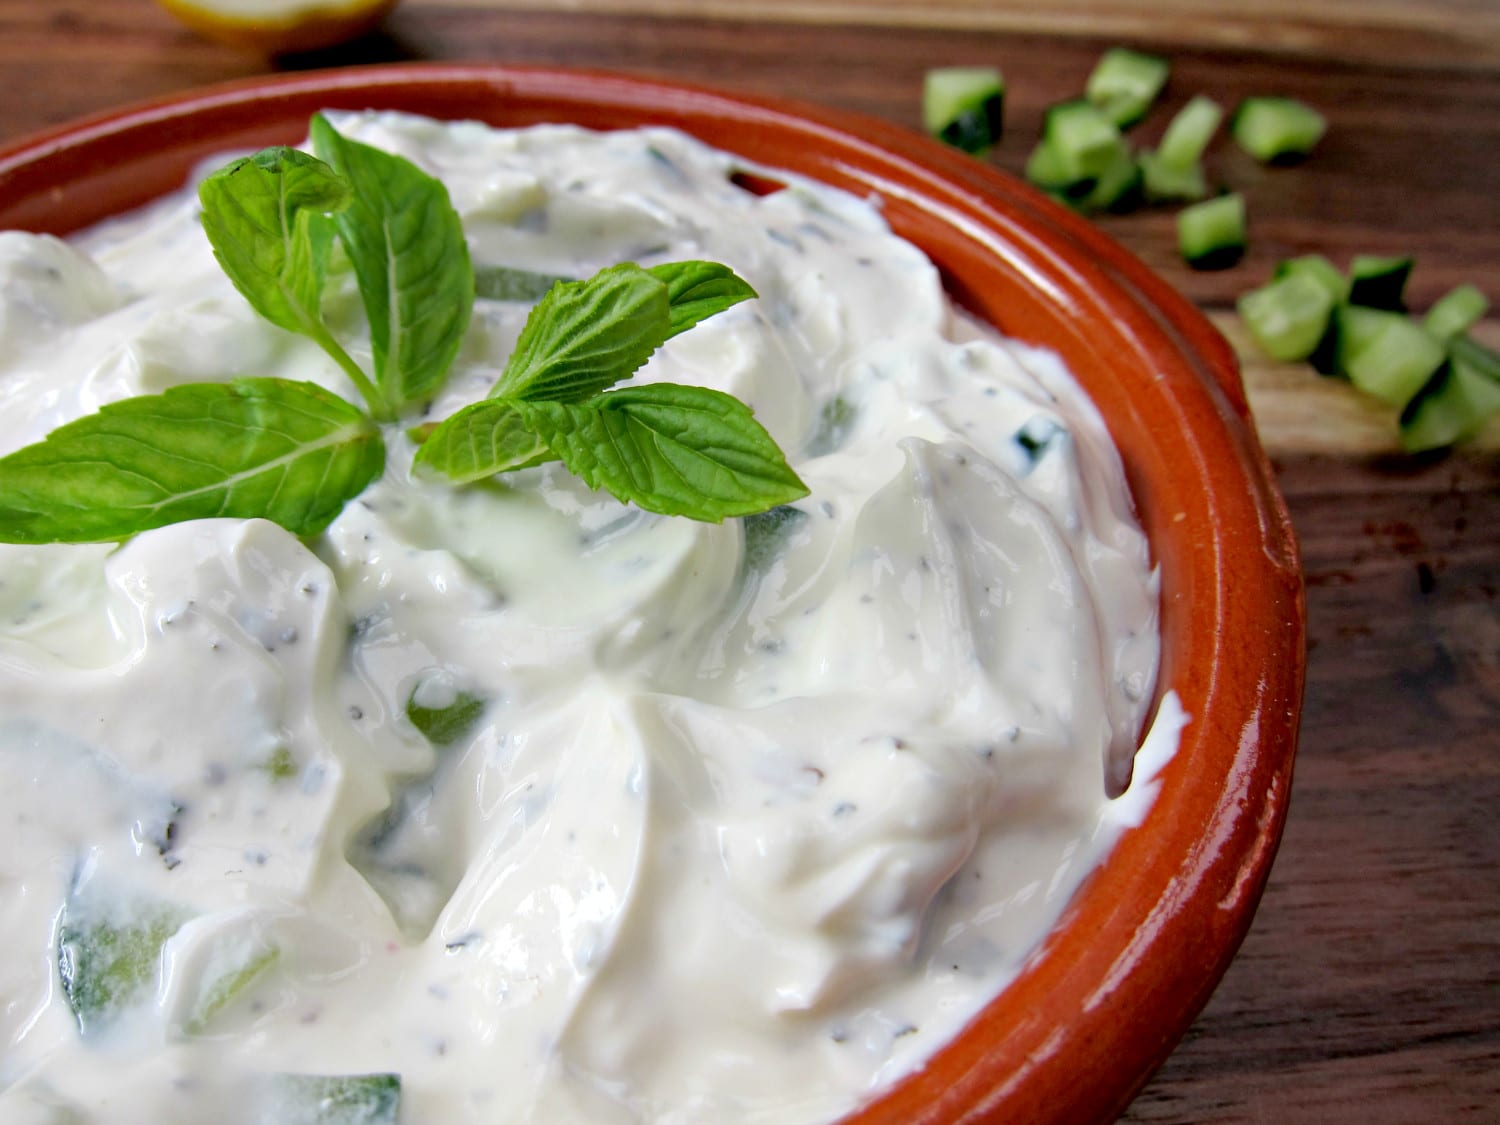 Massage & Fysioterapi: Tzatziki af græsk yoghurt med chili og karry